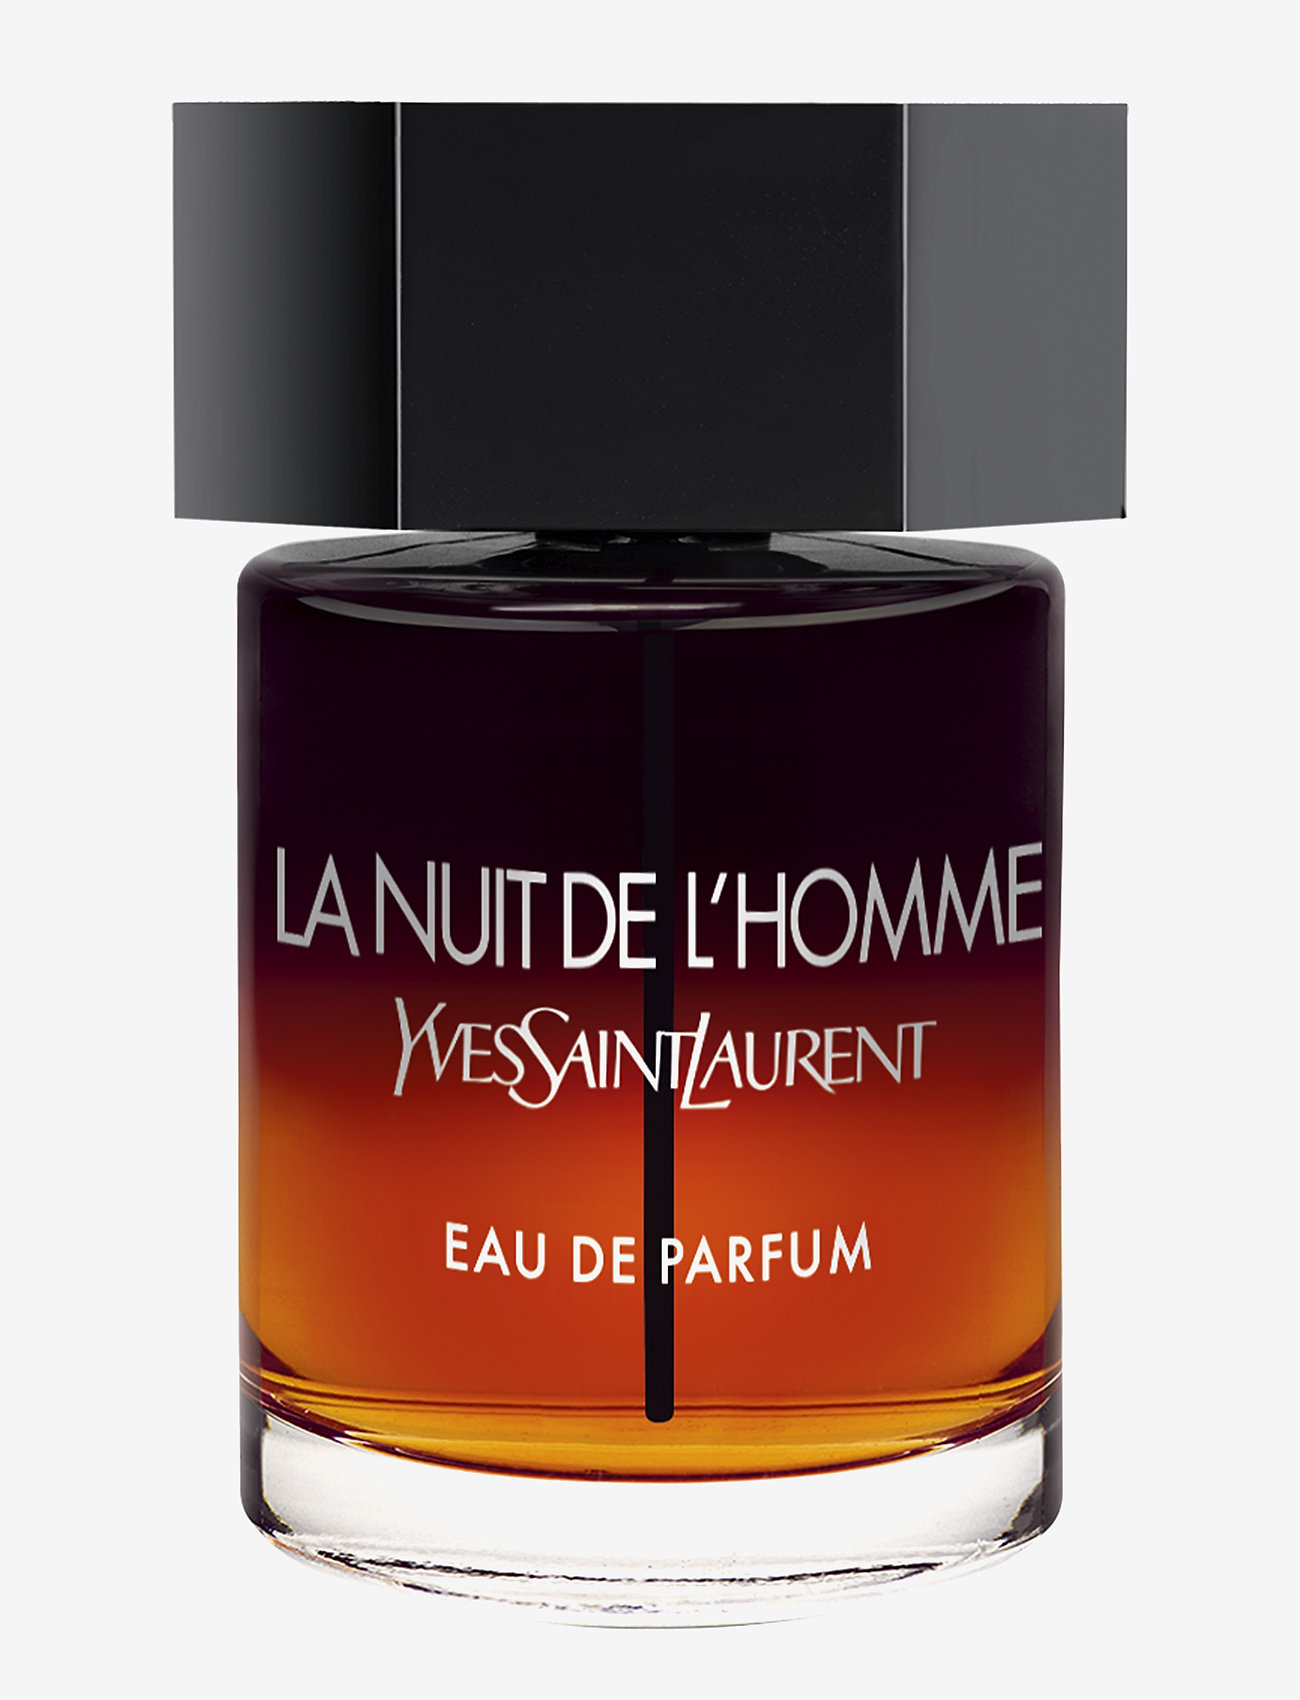 Yves Saint Laurent La Nuit De L'homme Eau De Parfum 100ml - 769 kr